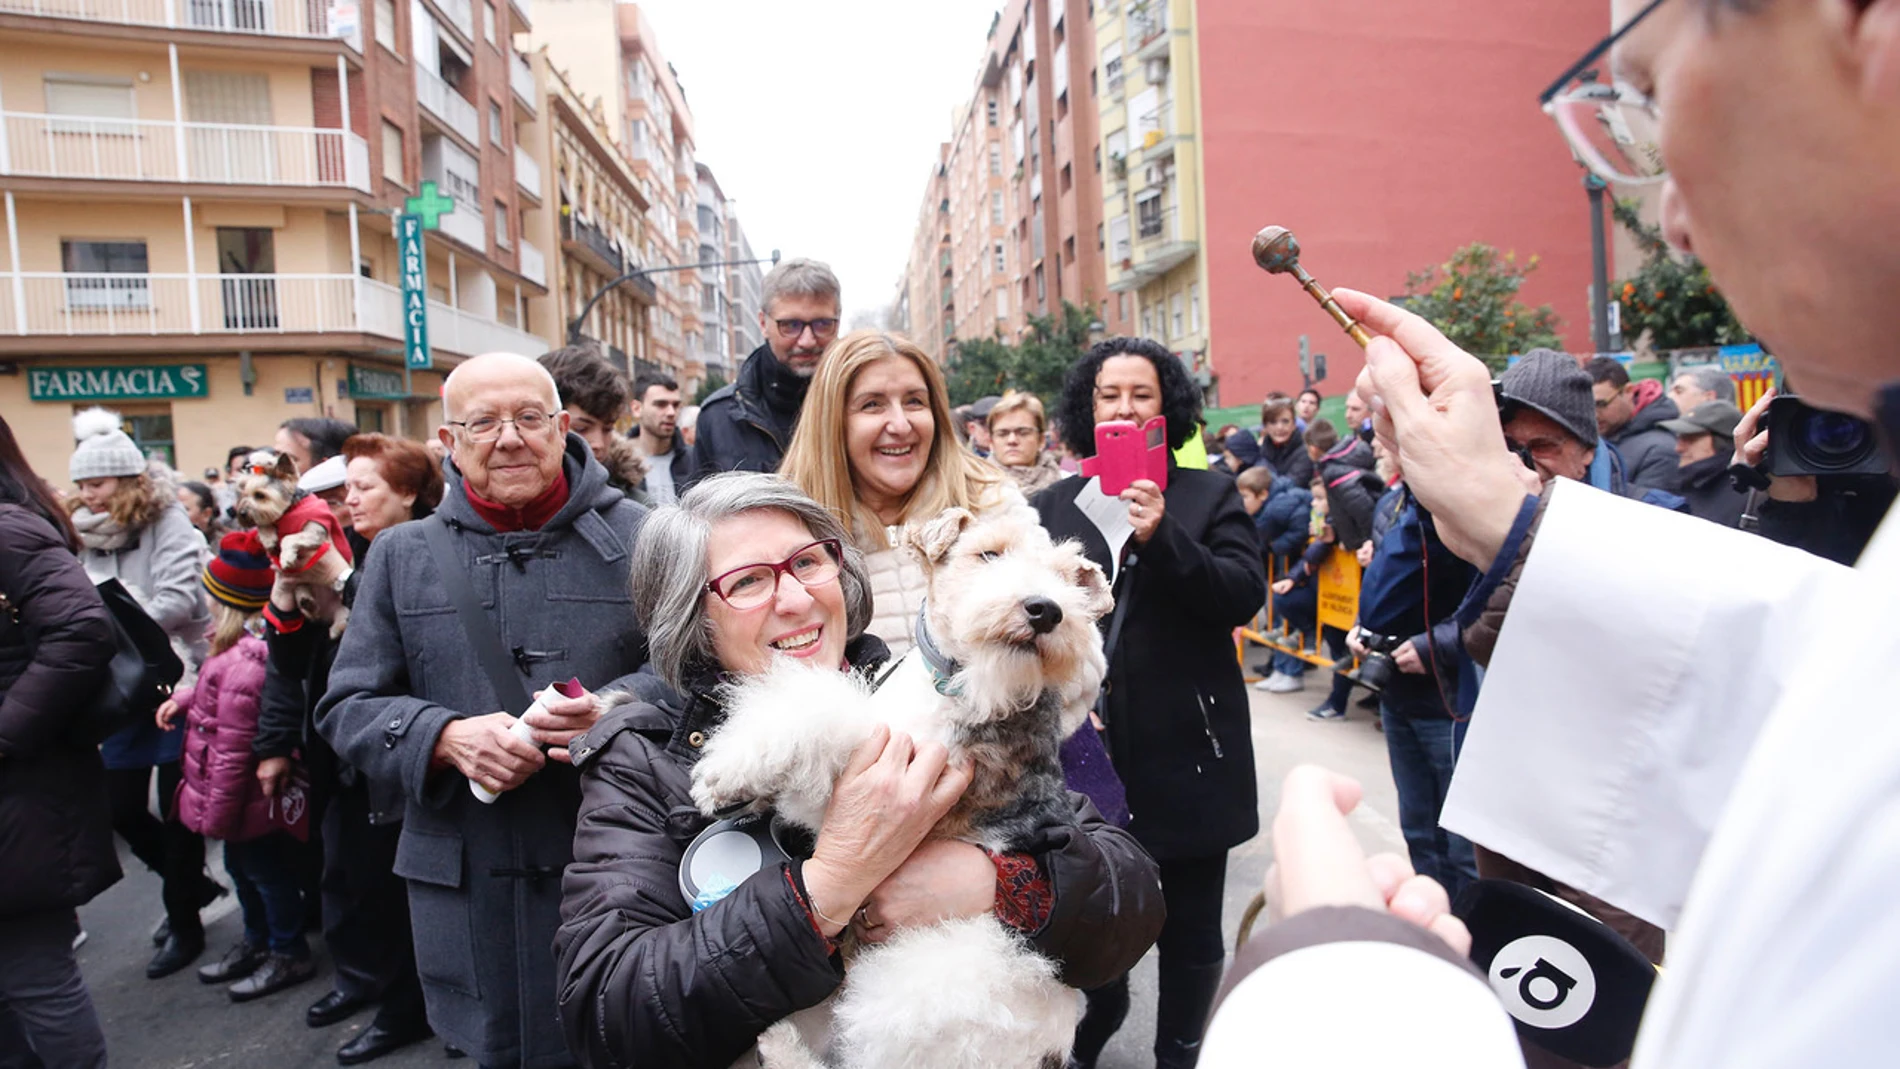 Más de un centenar de localidades de la archidiócesis de Valencia, incluida la capital, celebran la festividad de San Antonio Abad, con misas, procesiones y bendiciones de animales, ya que además de ser el patrón de los ganaderos está considerado el protector de los animales